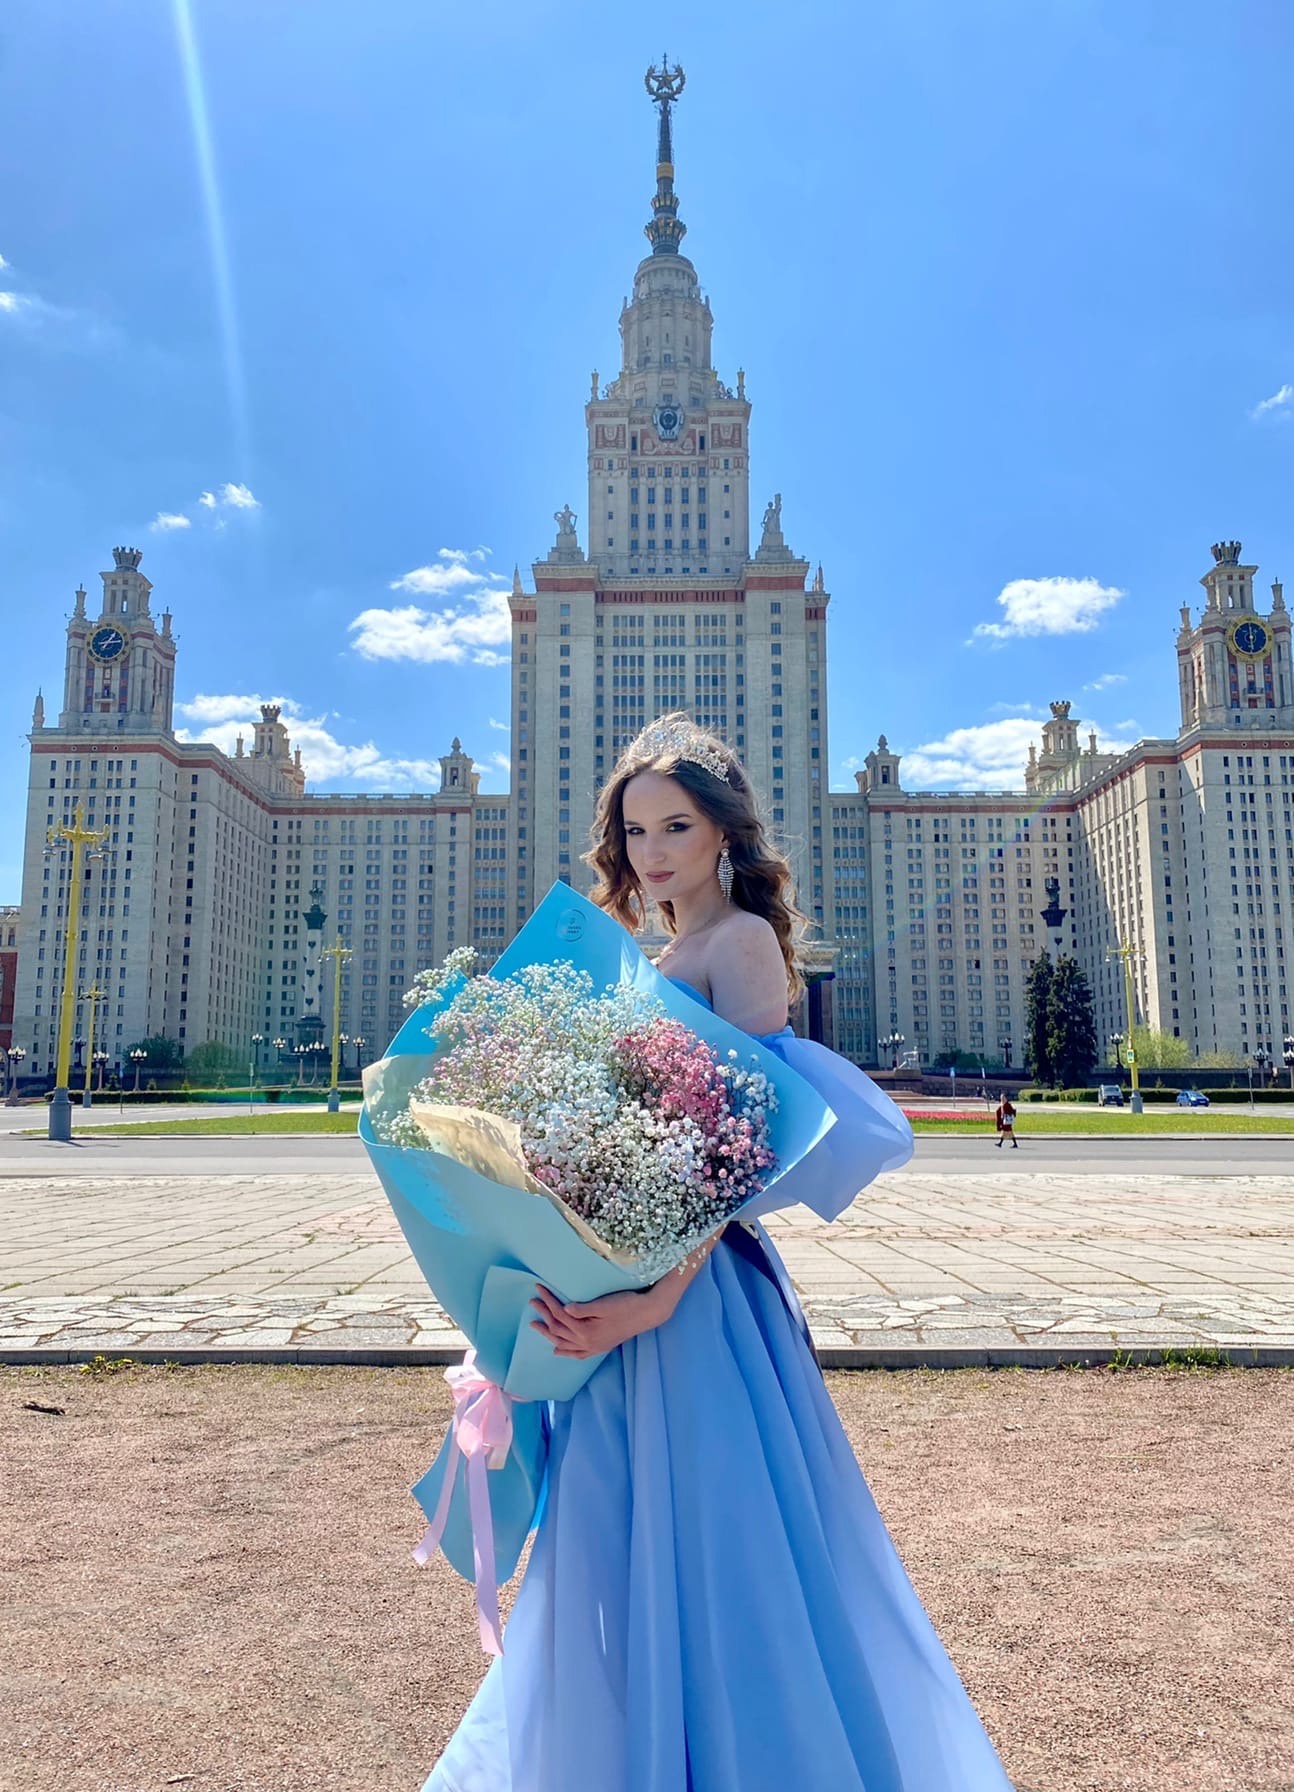 Анастасия Климентьева завоевала почетный титул "Мисс Физфак МГУ – 2022"